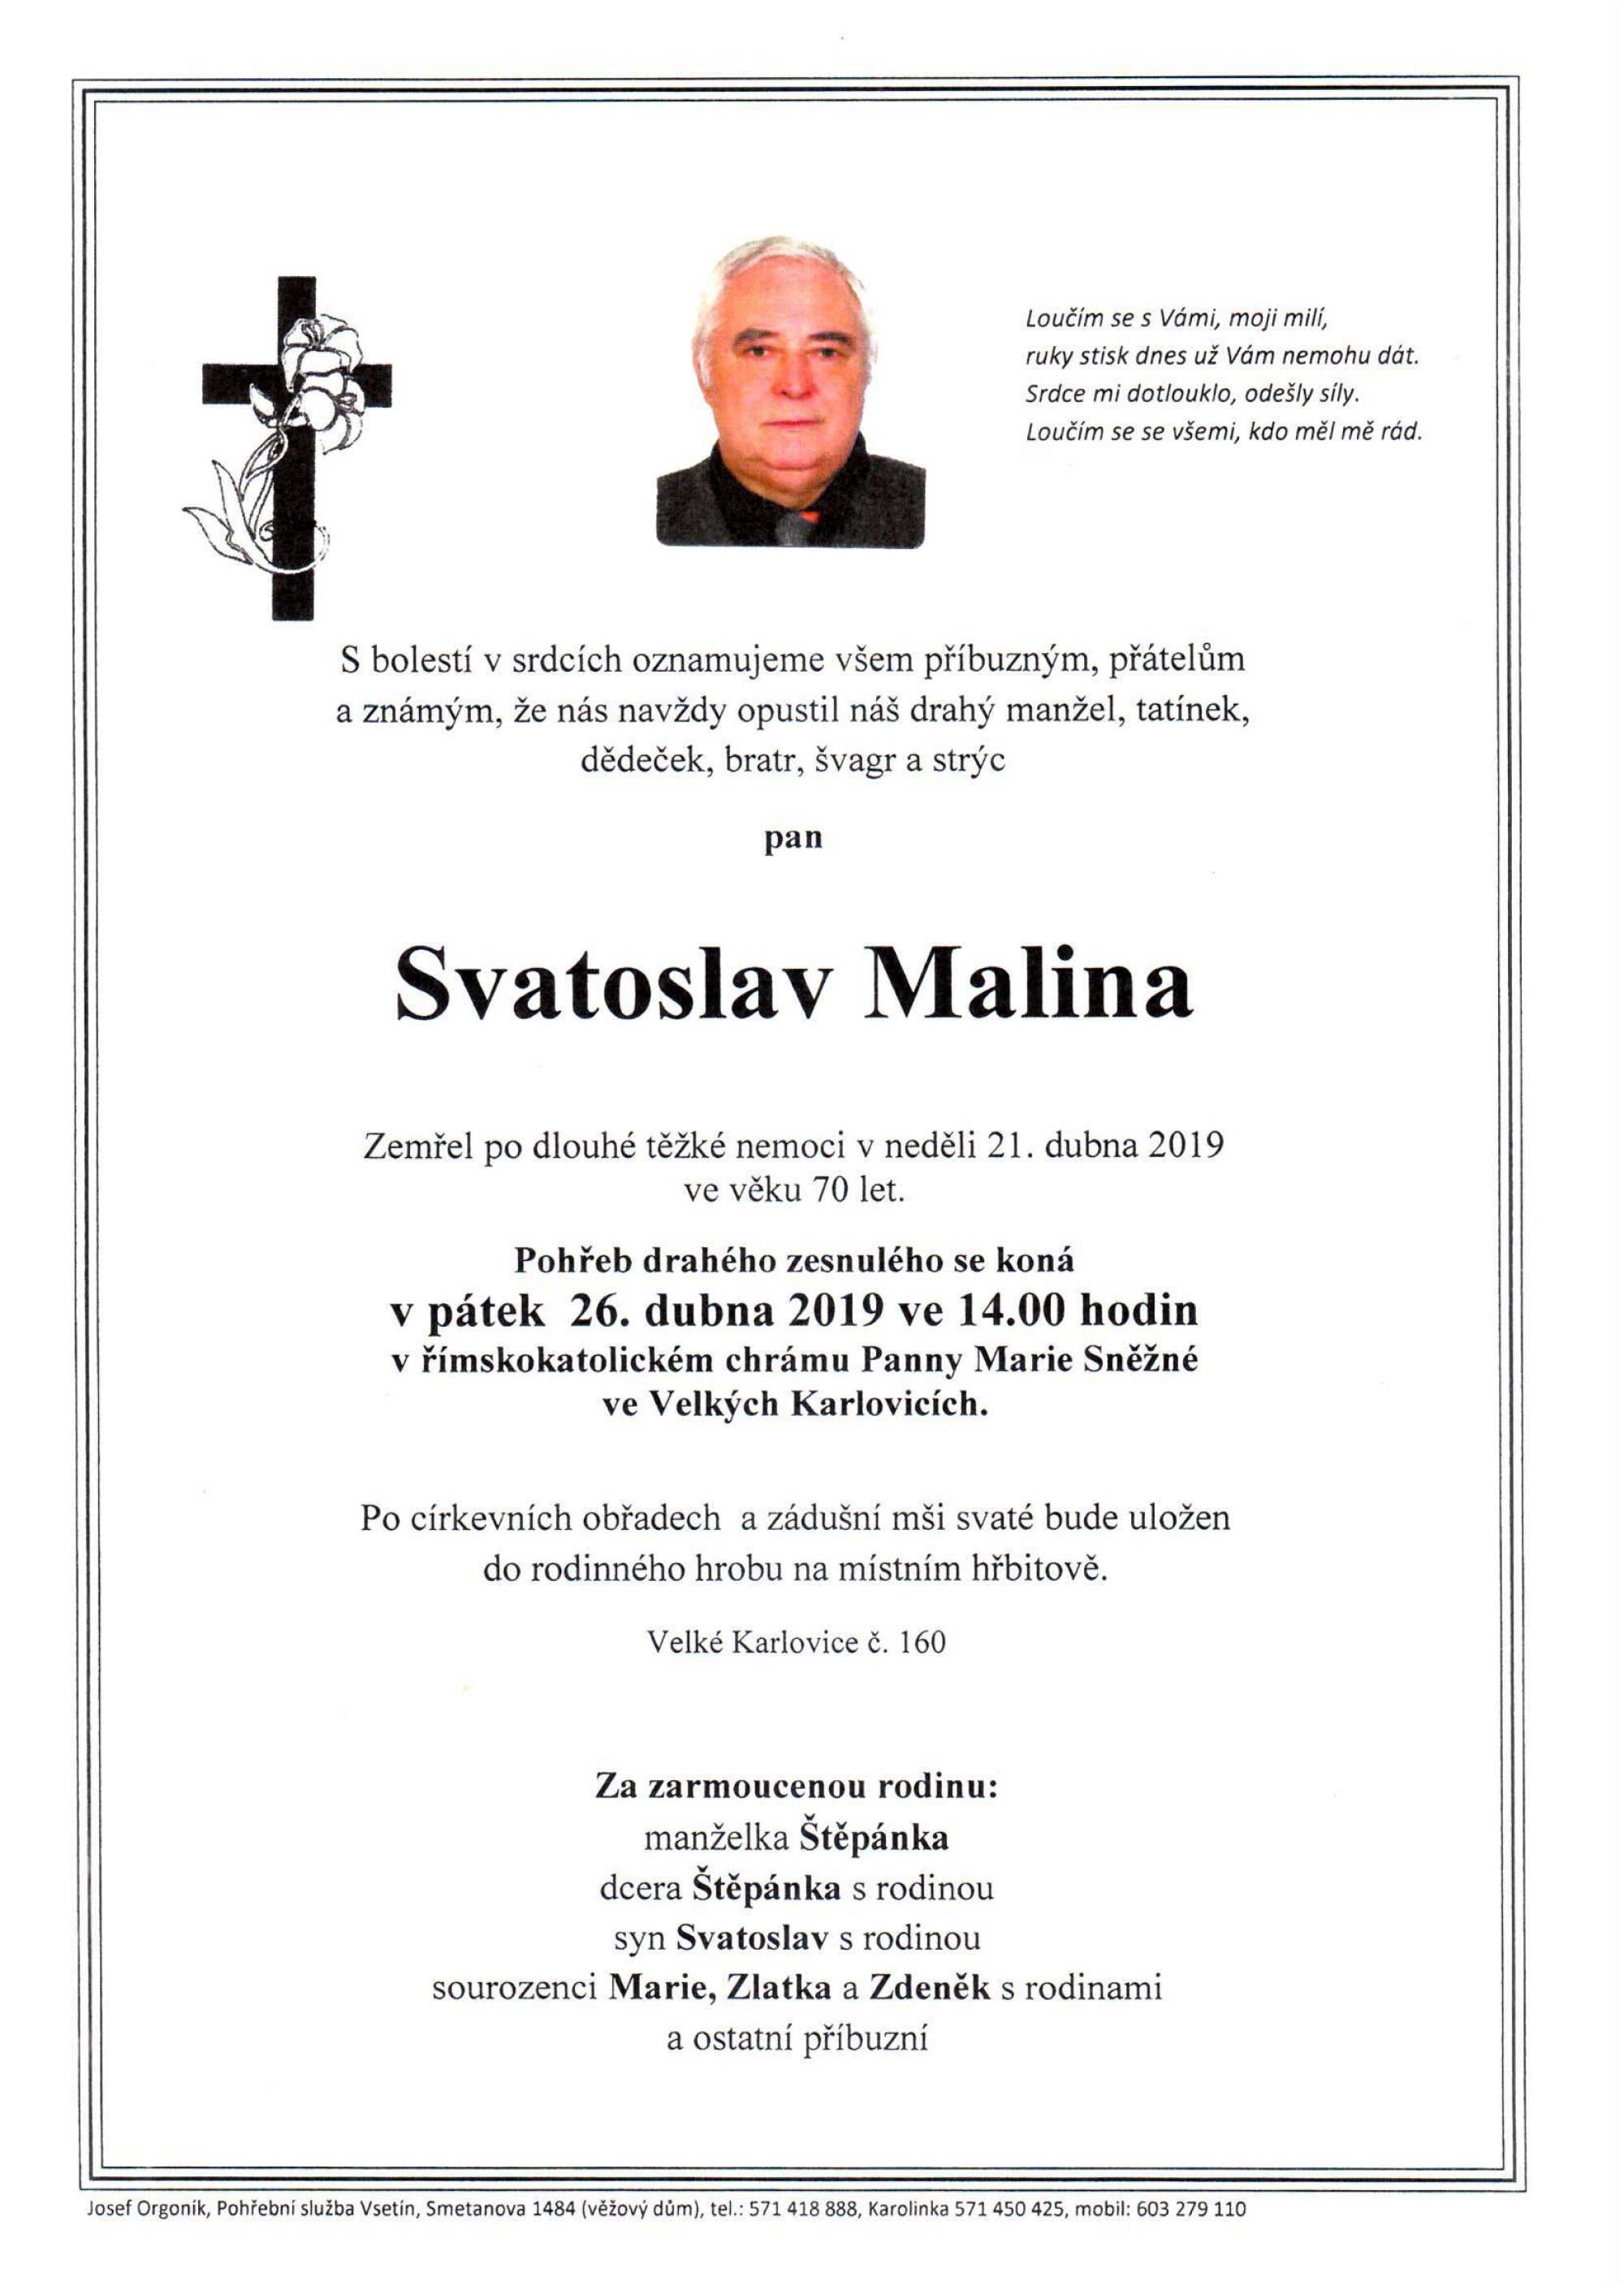 Svatoslav Malina